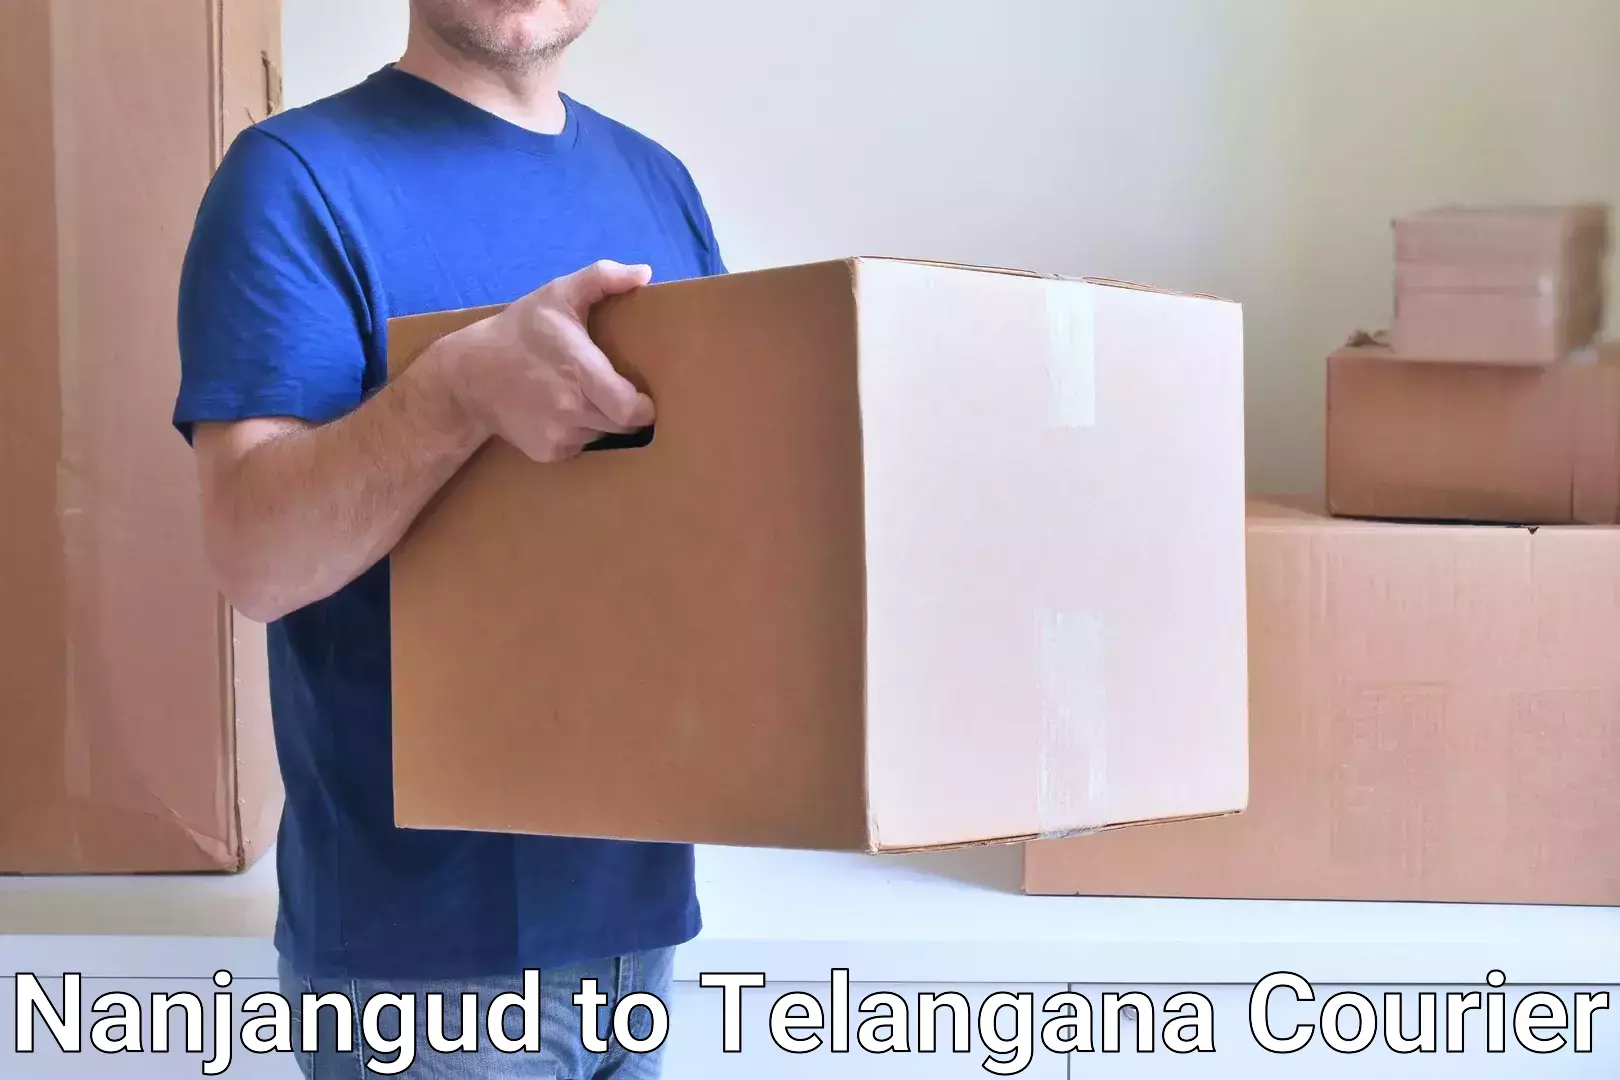 Premium courier solutions Nanjangud to Tadoor